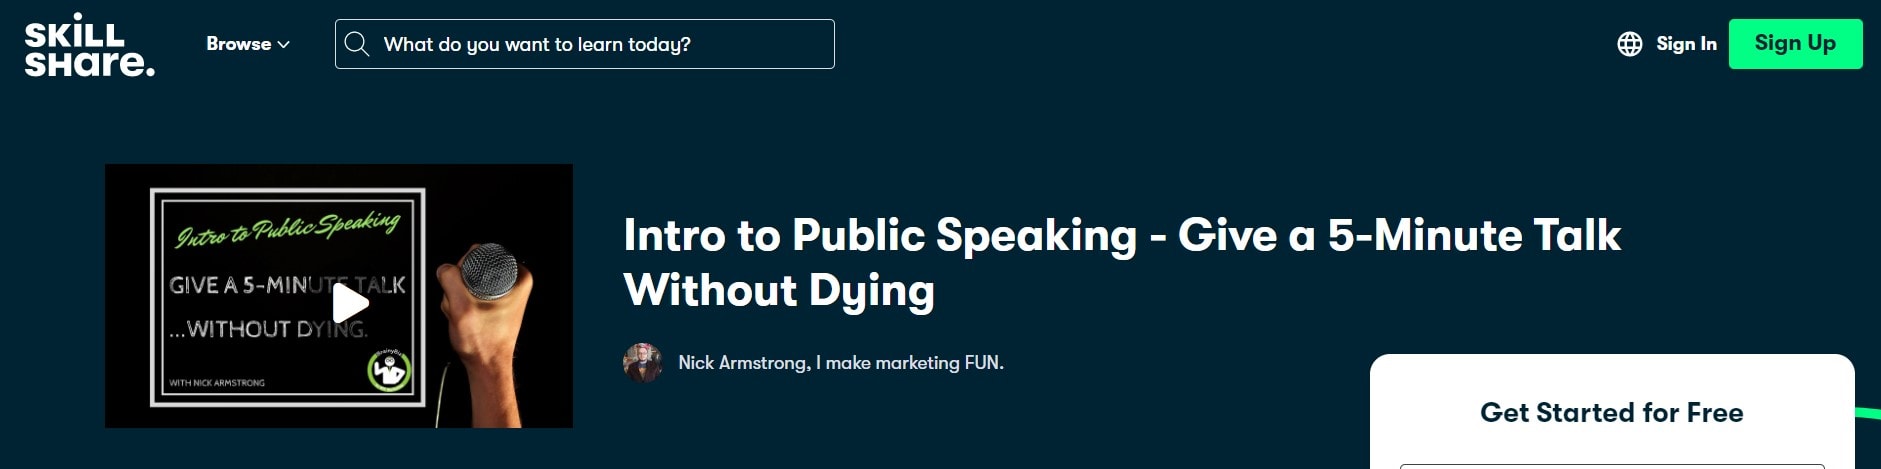 Intro to Public Speaking